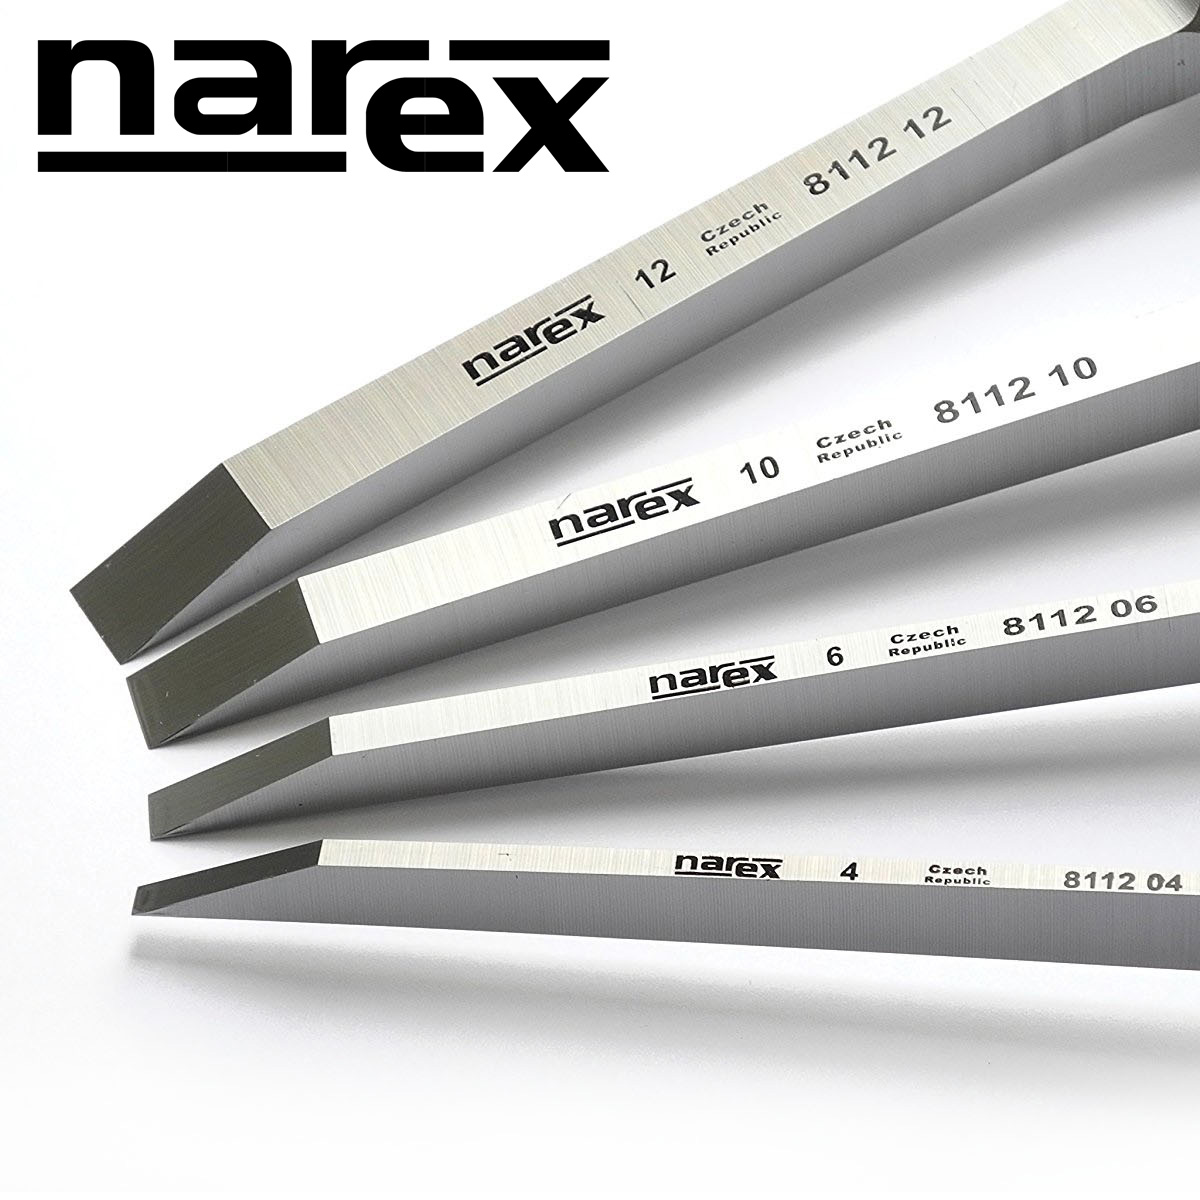 Narex image